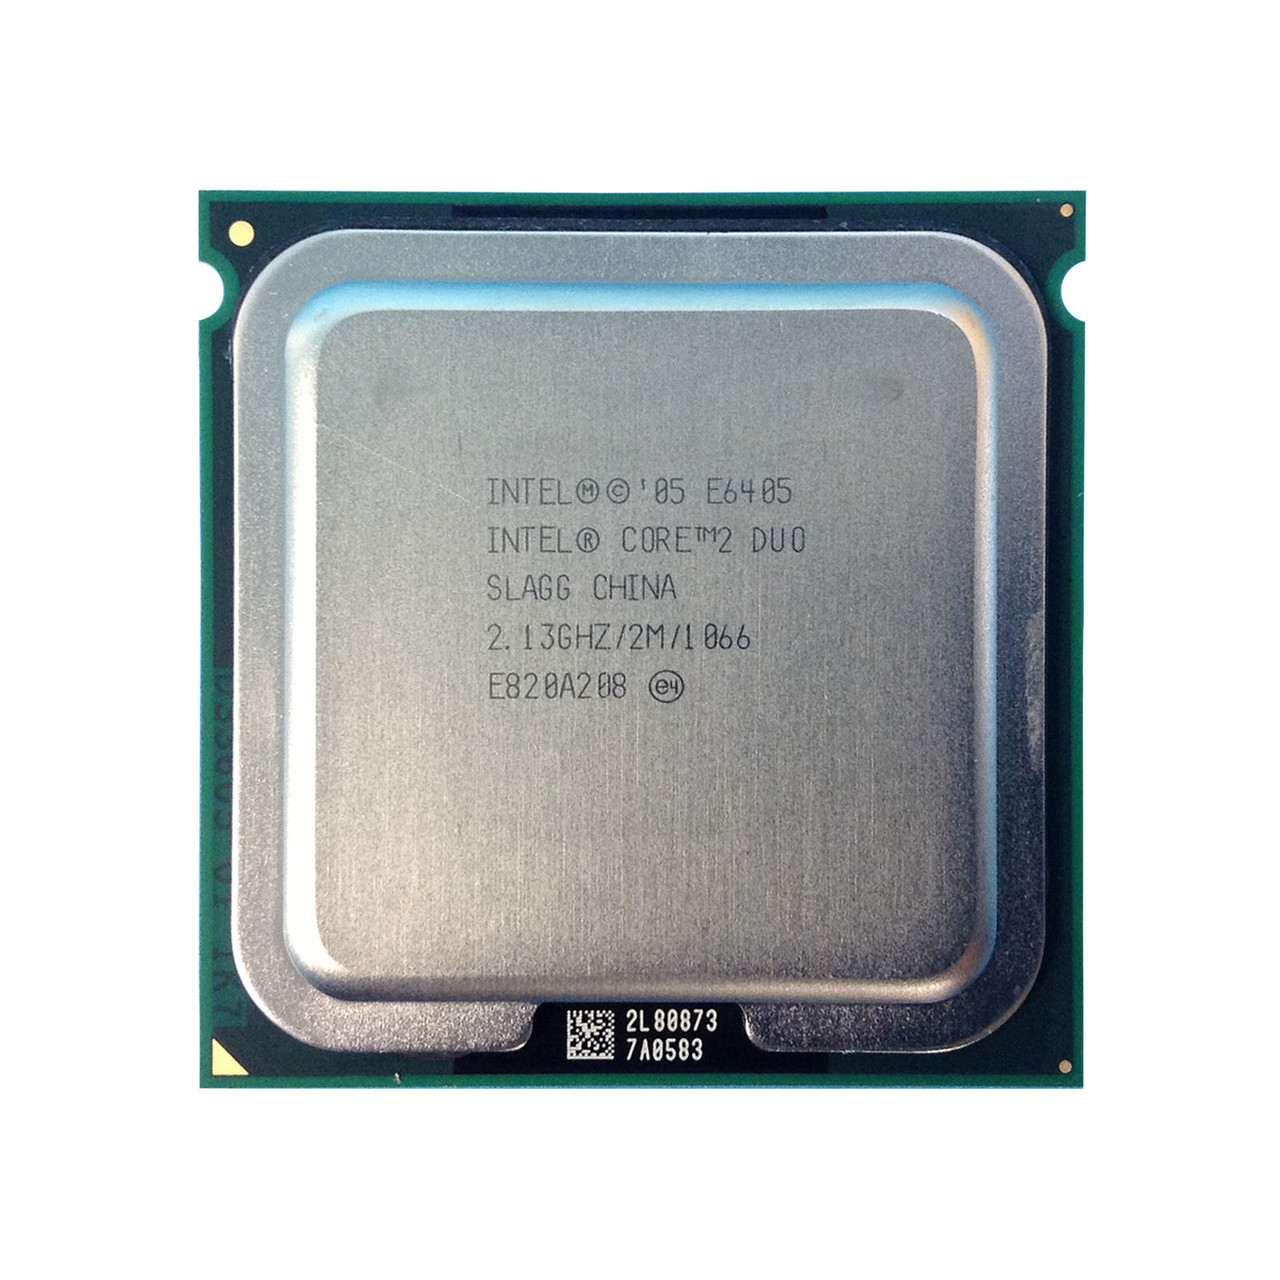 Dell HT149 Core 2 Duo E6405 2.13Ghz 2MB 1066FSB Processor